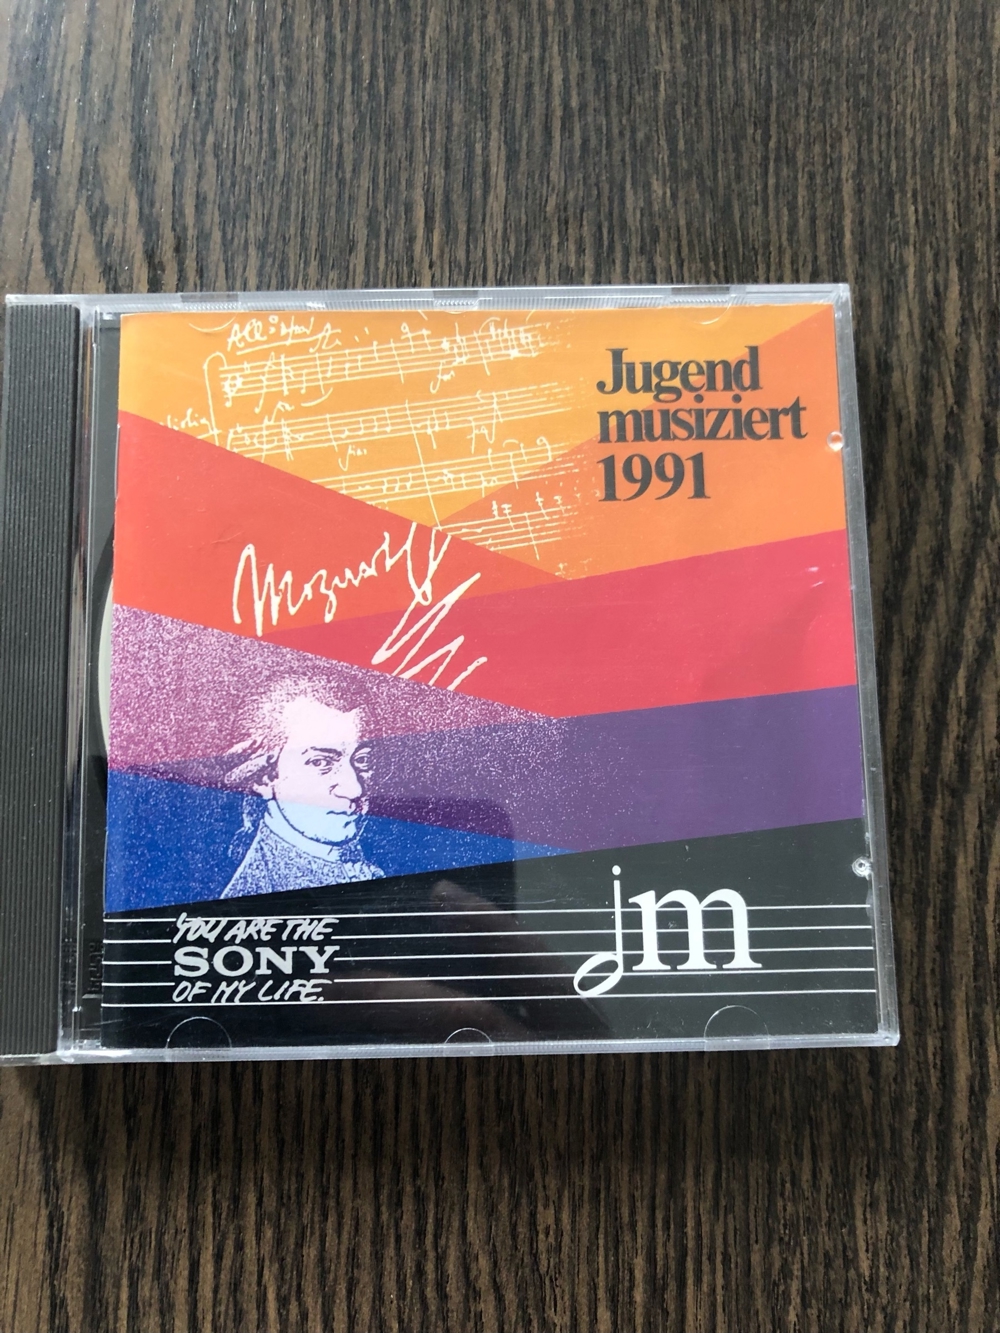 Jugend musiziert 1991